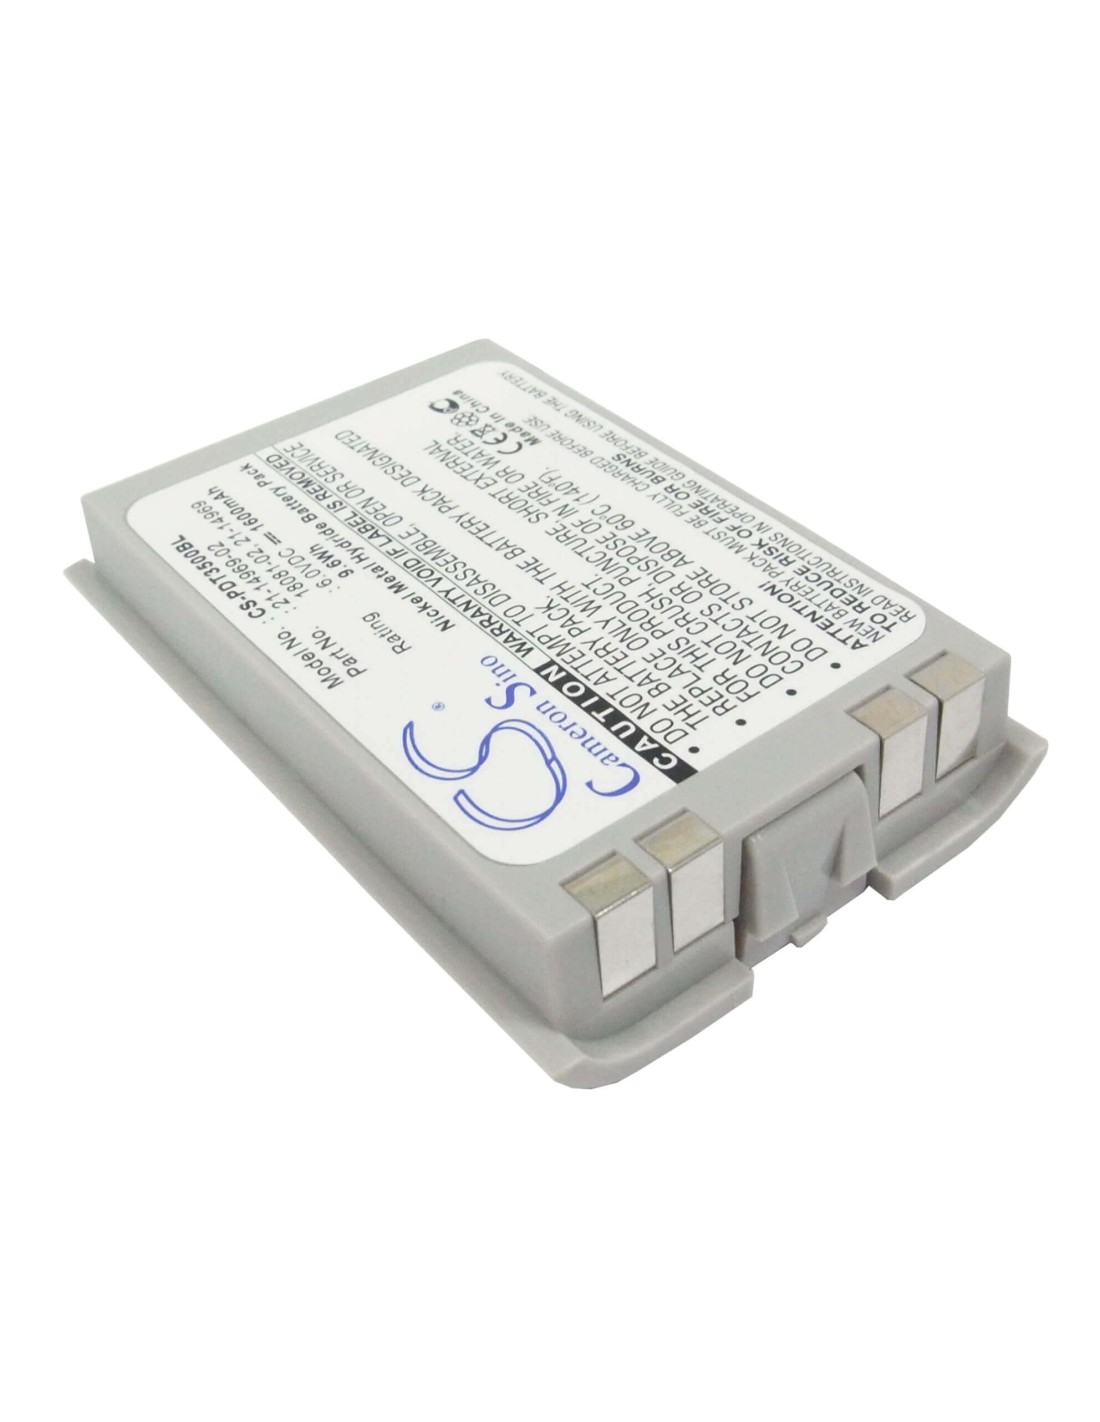 Battery for Symbol Pdt3500, Pdt3510, Pdt3540 6.0V, 1600mAh - 9.60Wh